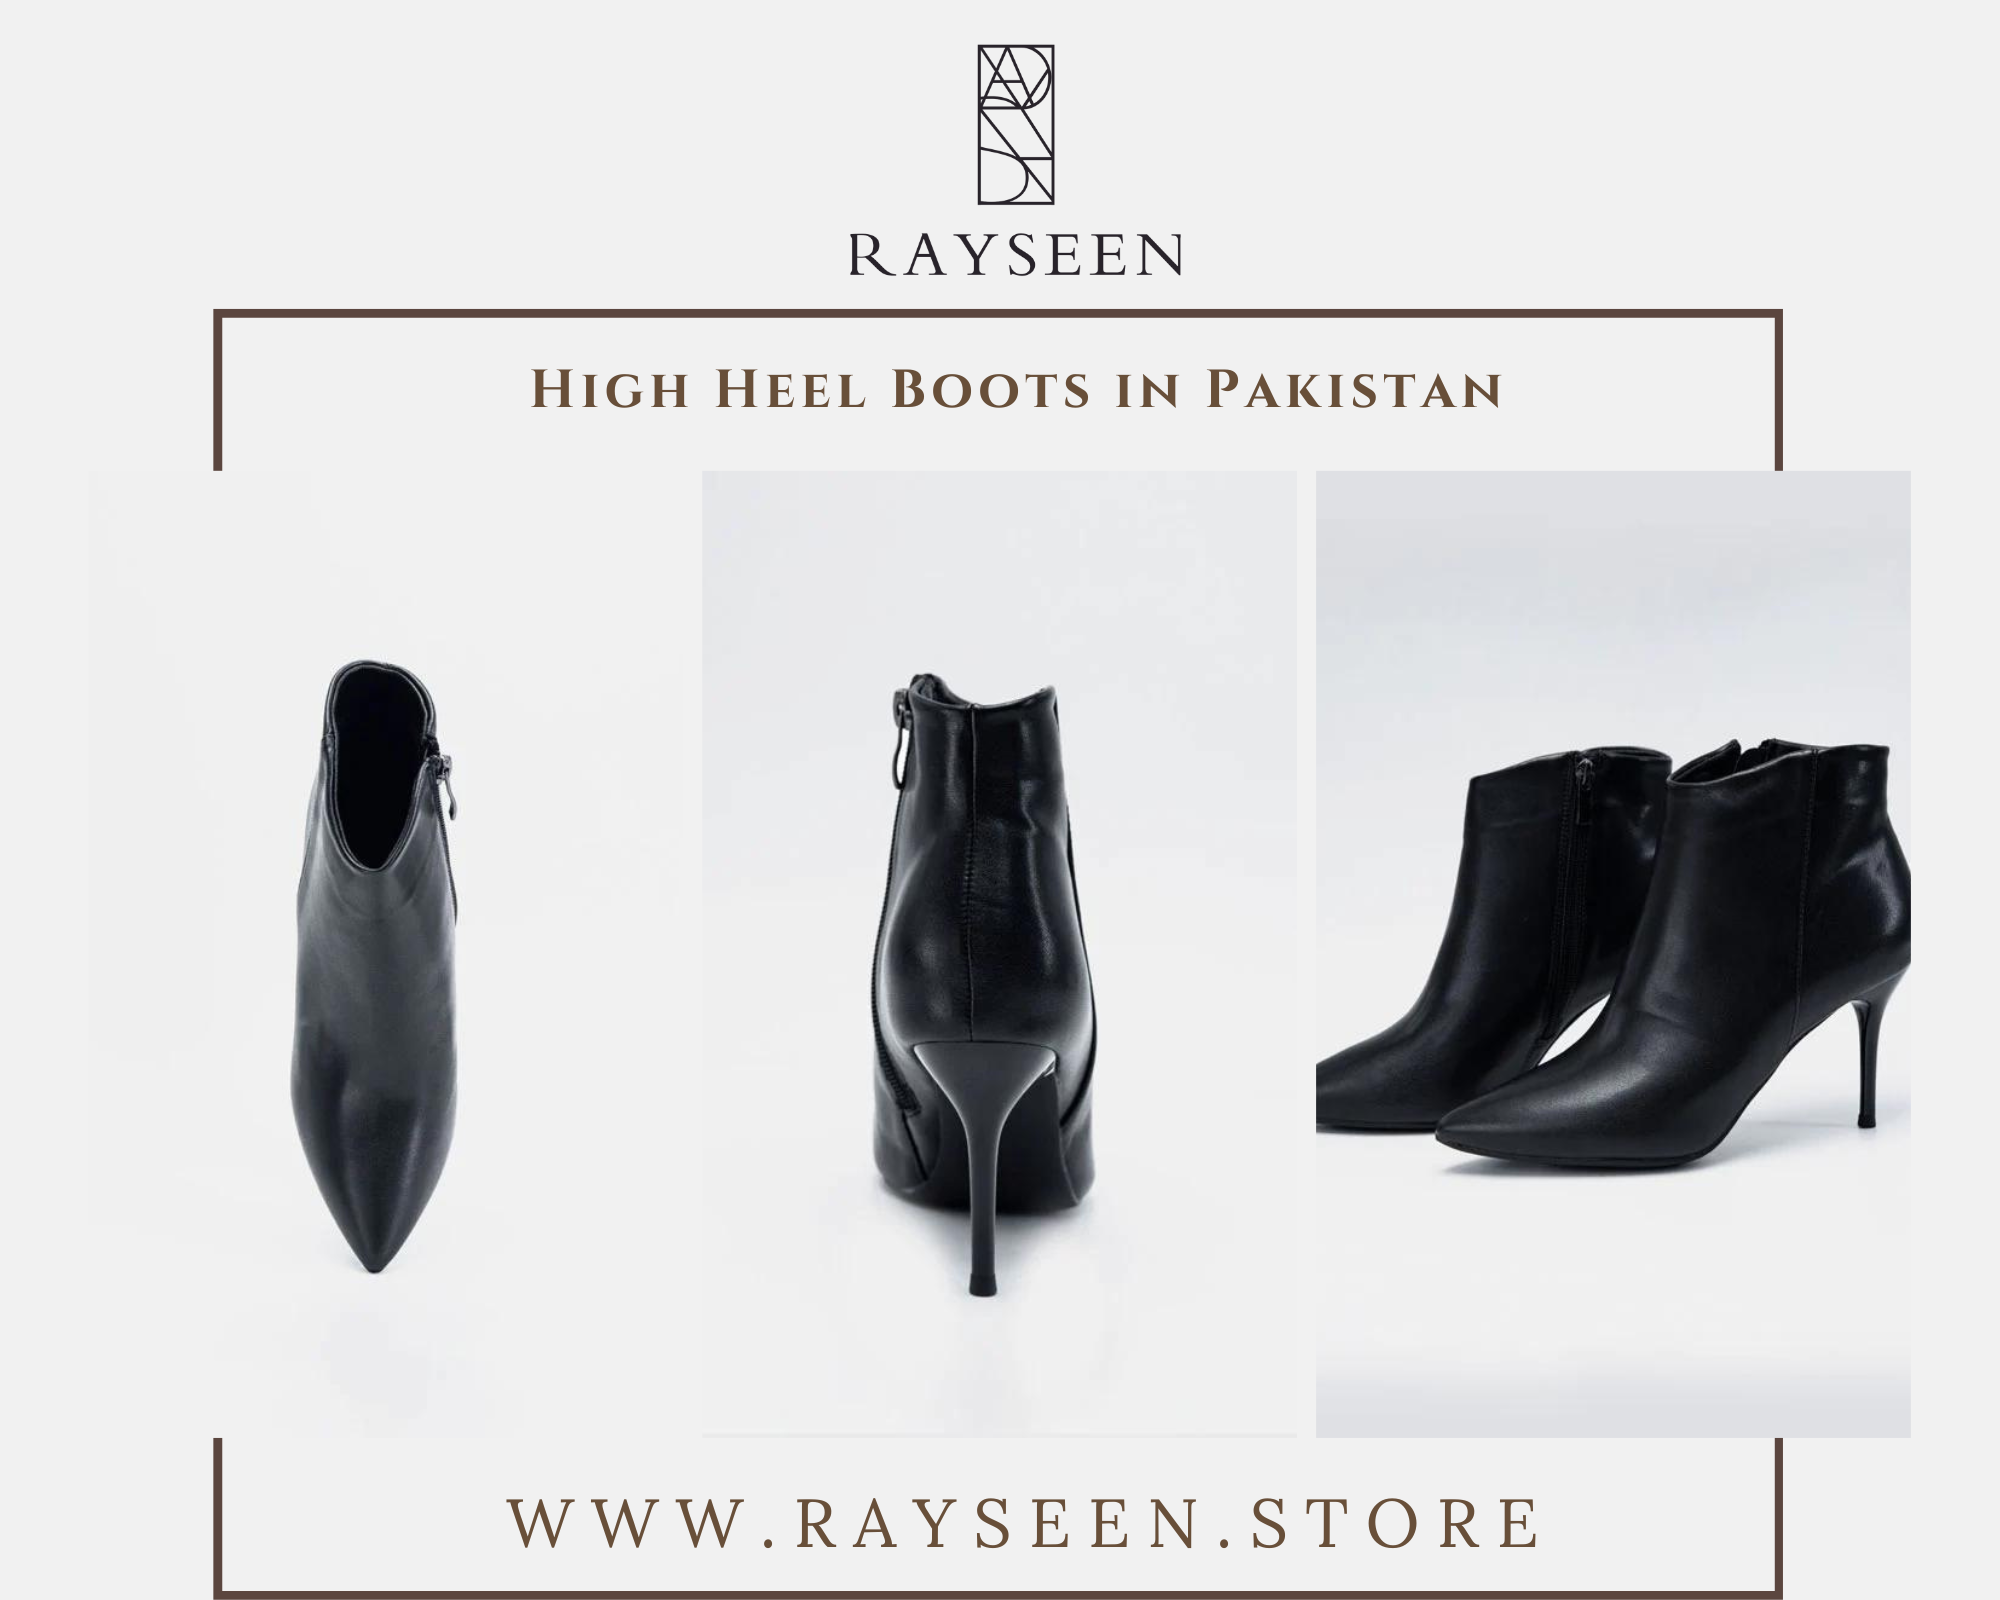 High Heel Boots in Pakistan